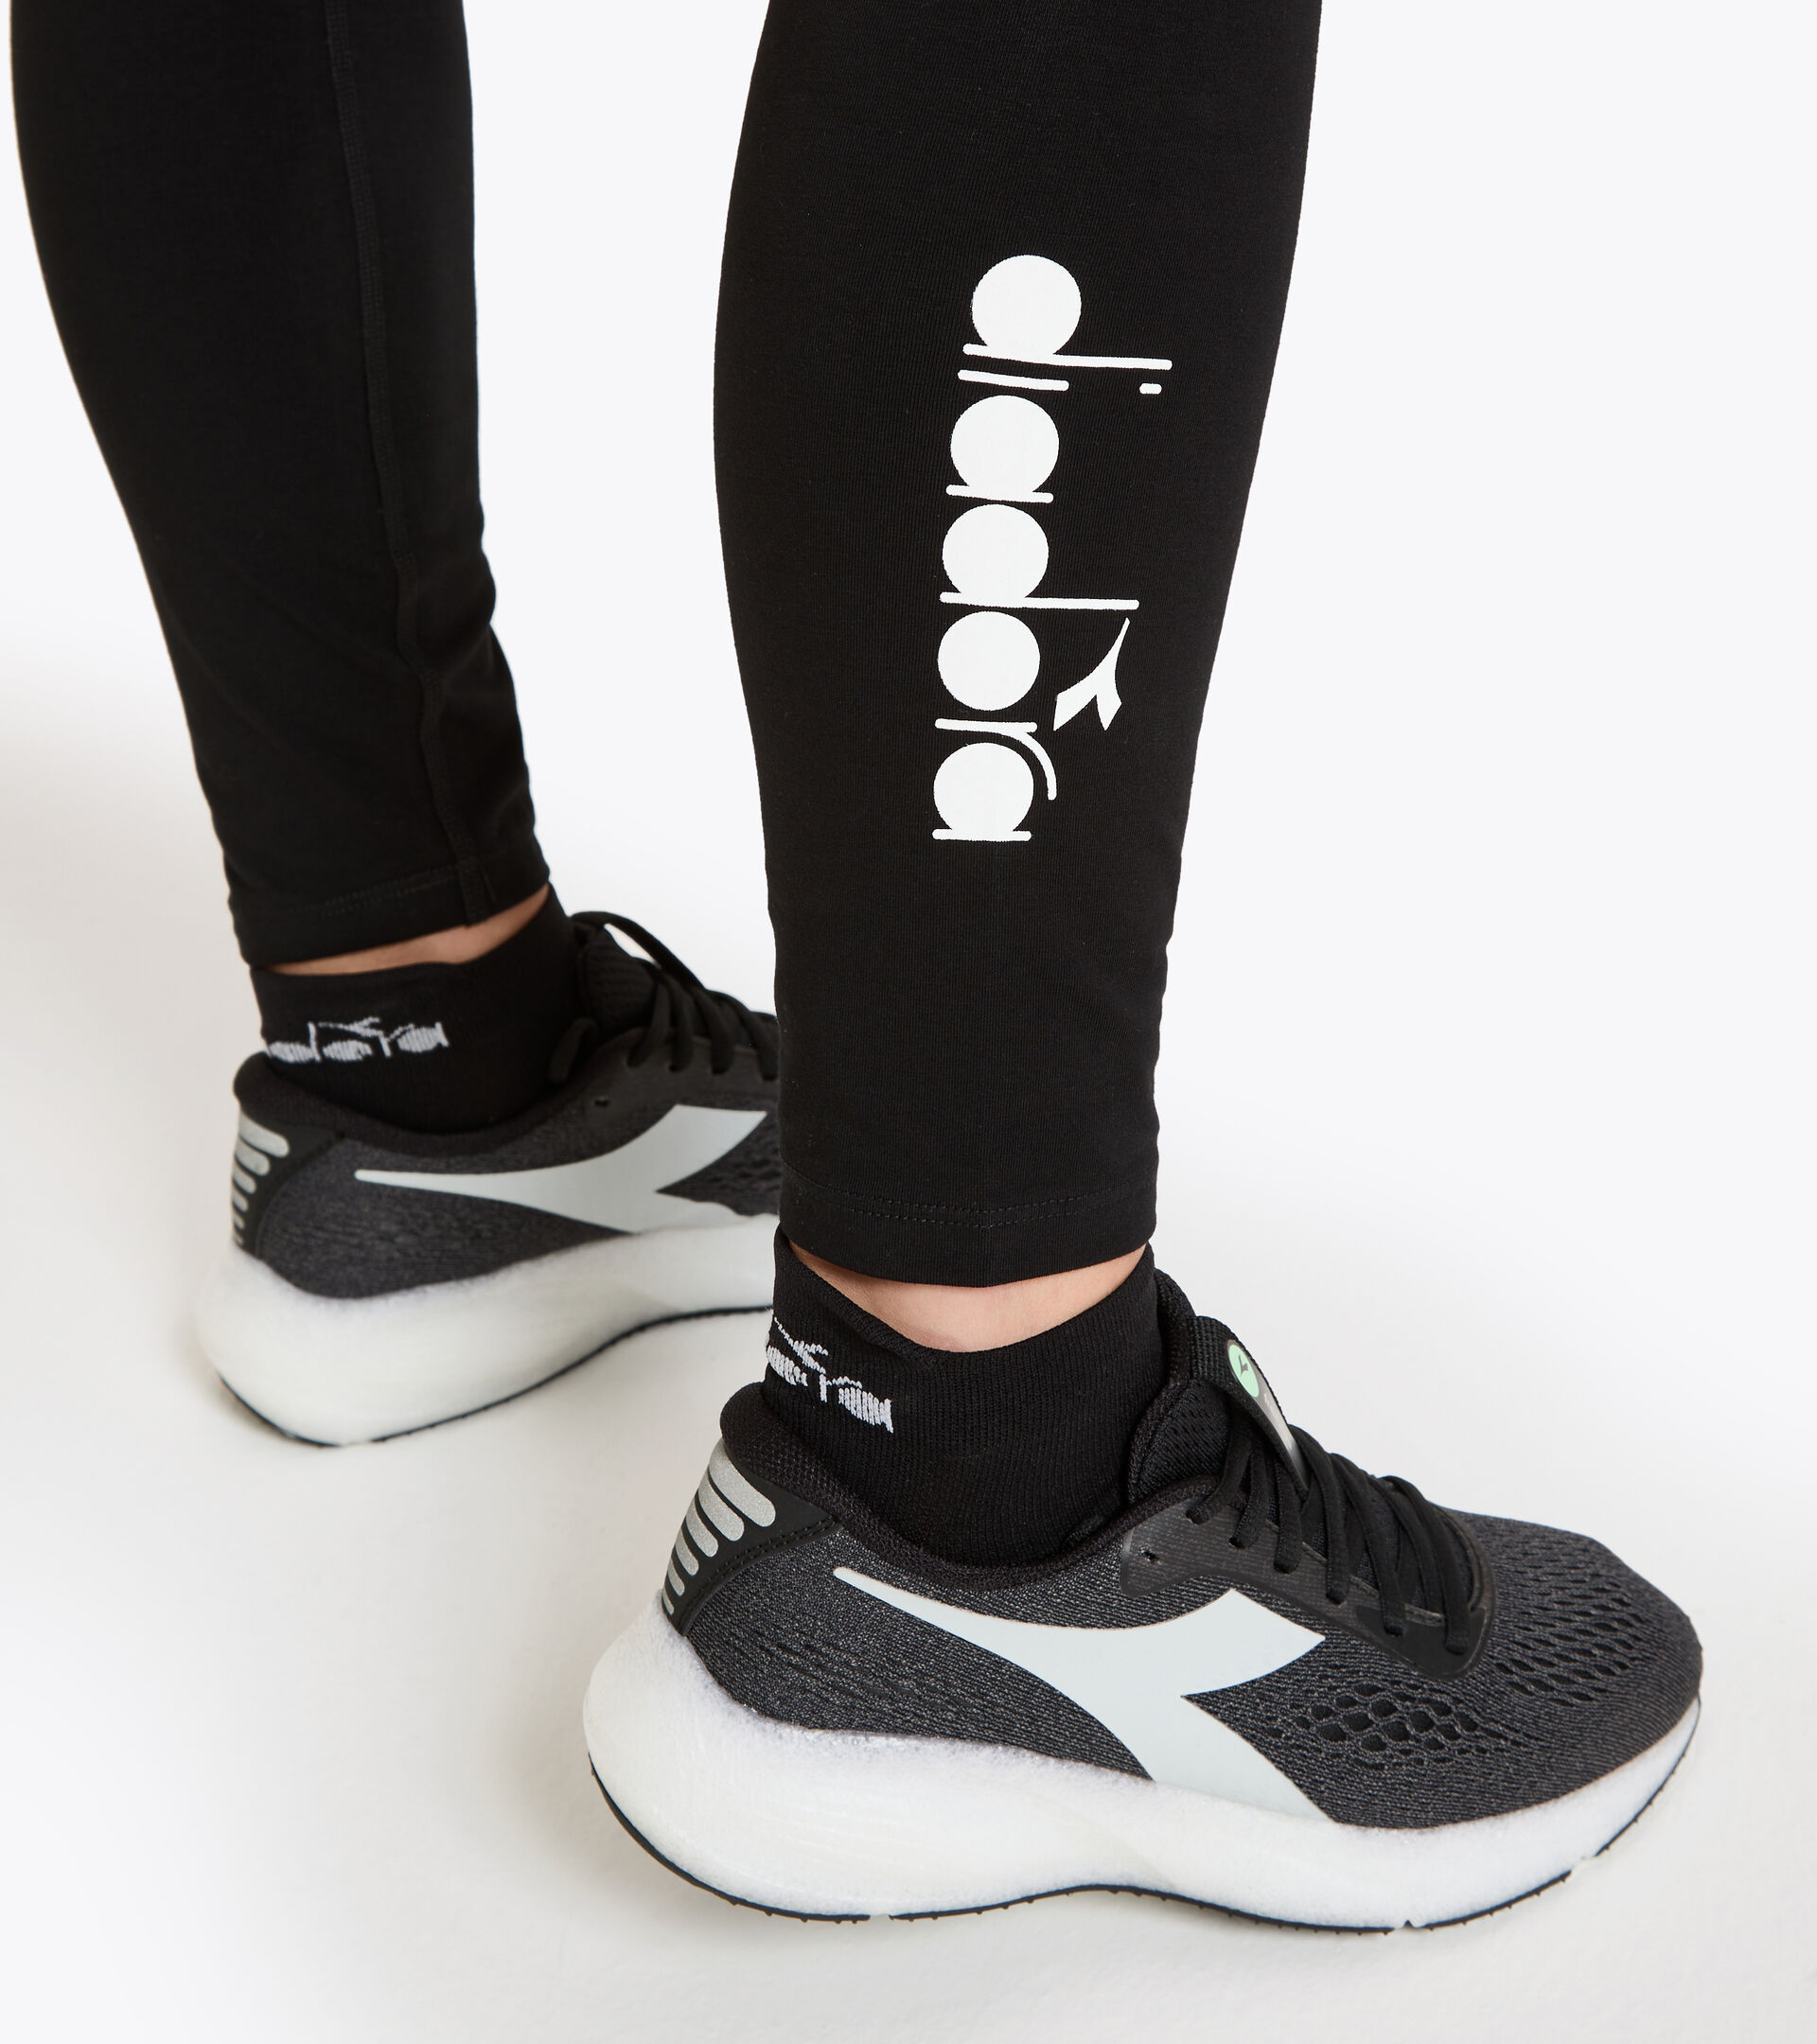 Women's workout leggings L. STC LEGGINGS BUDDYFIT BLACK - Diadora